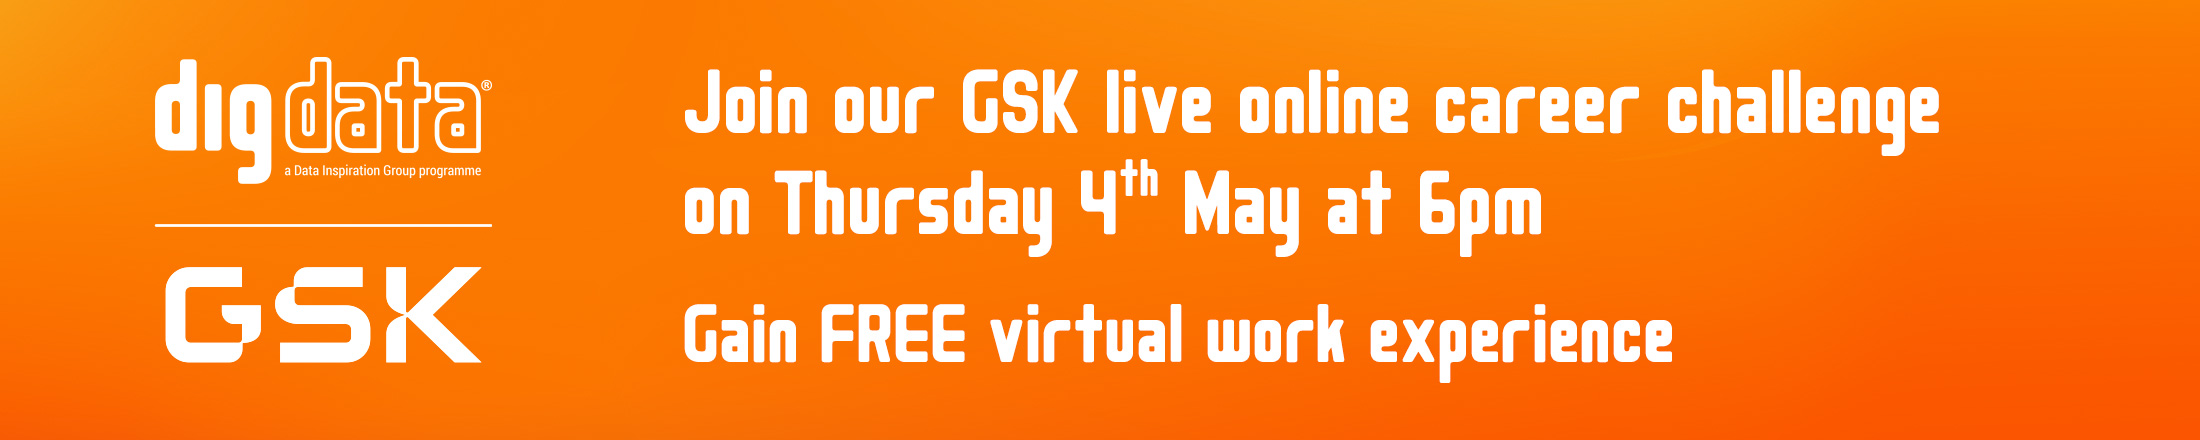 GSK Career Challenge Marketing Pack Banner